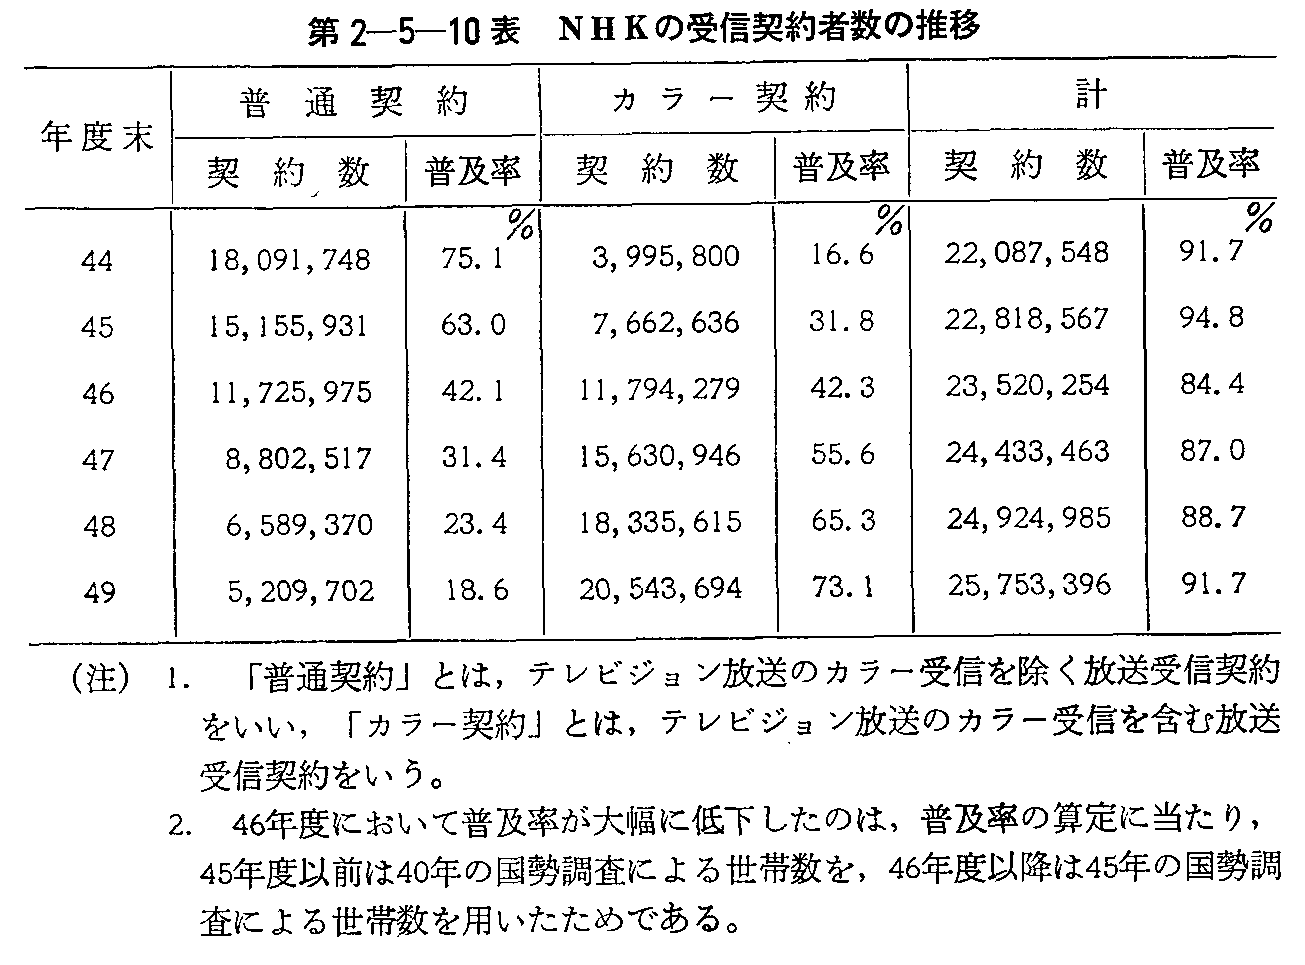 第2-5-10表 NHKの受信契約者数の推移